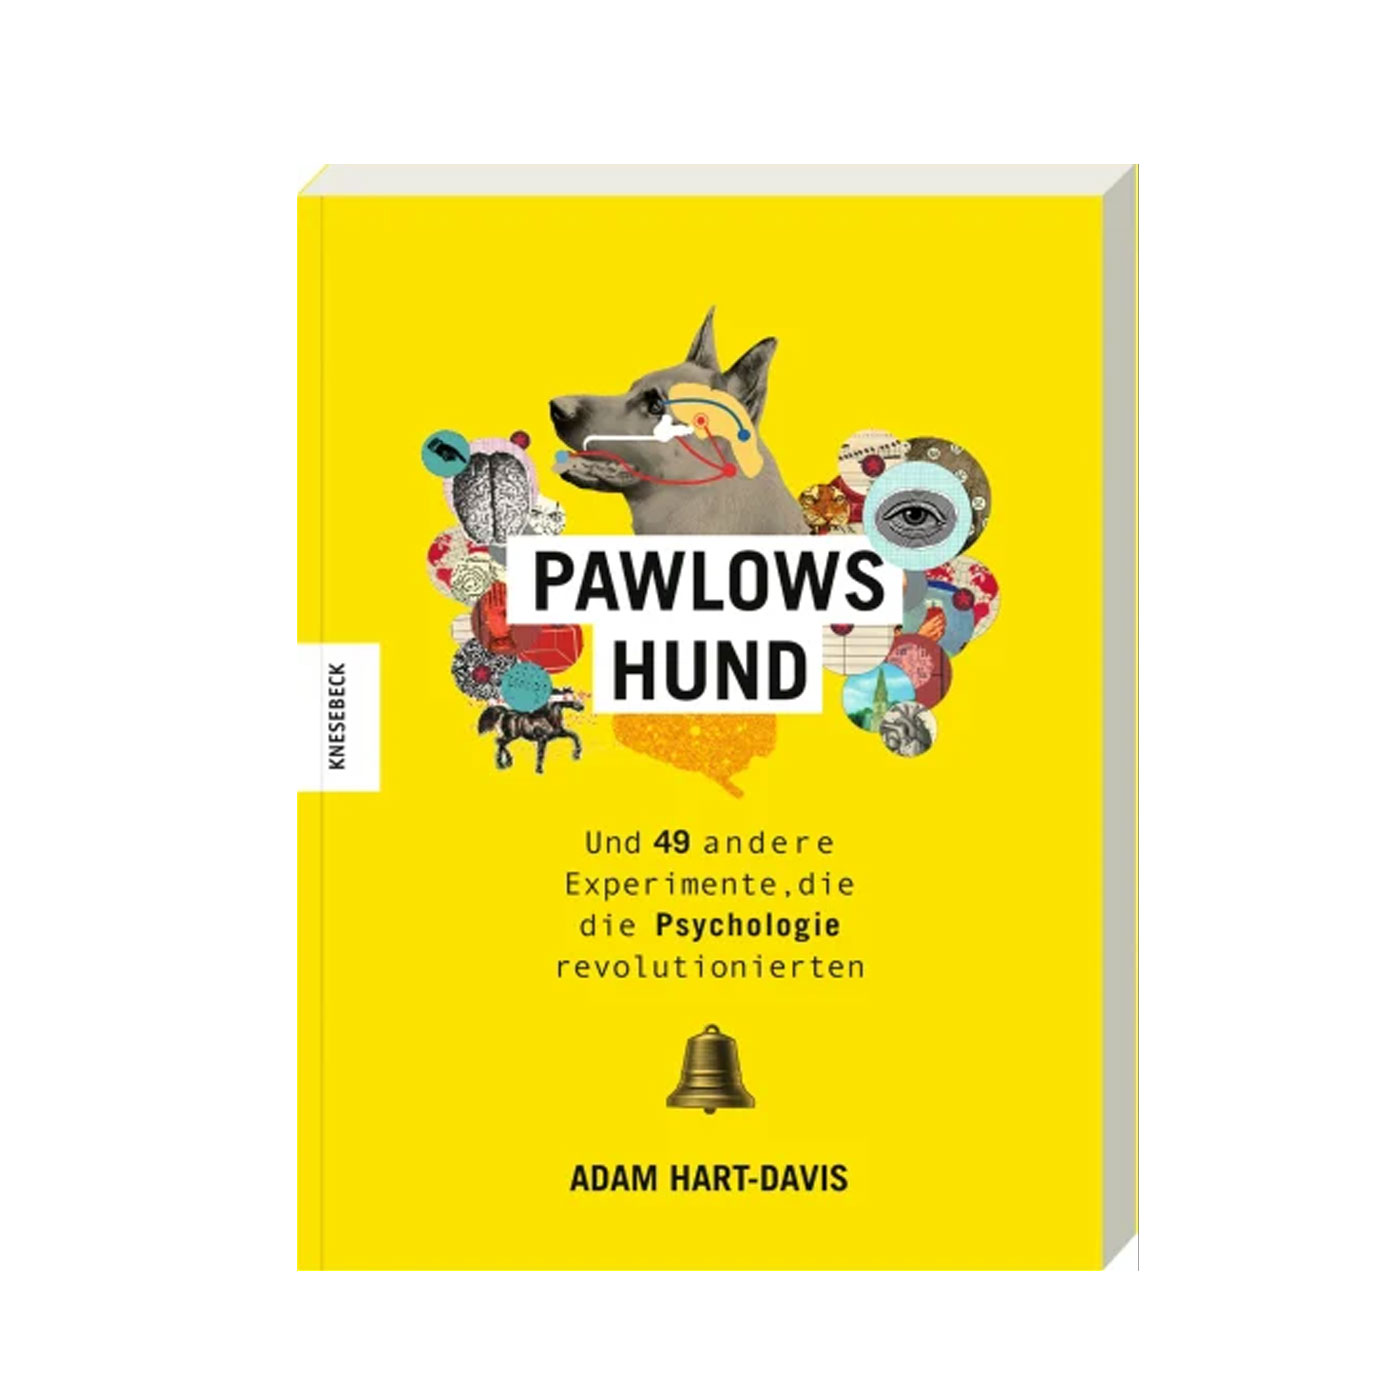 Pawlows Hund - Pschologische Experimente unterhaltsam dargestellt und illustriert - Knesebeck Verlag